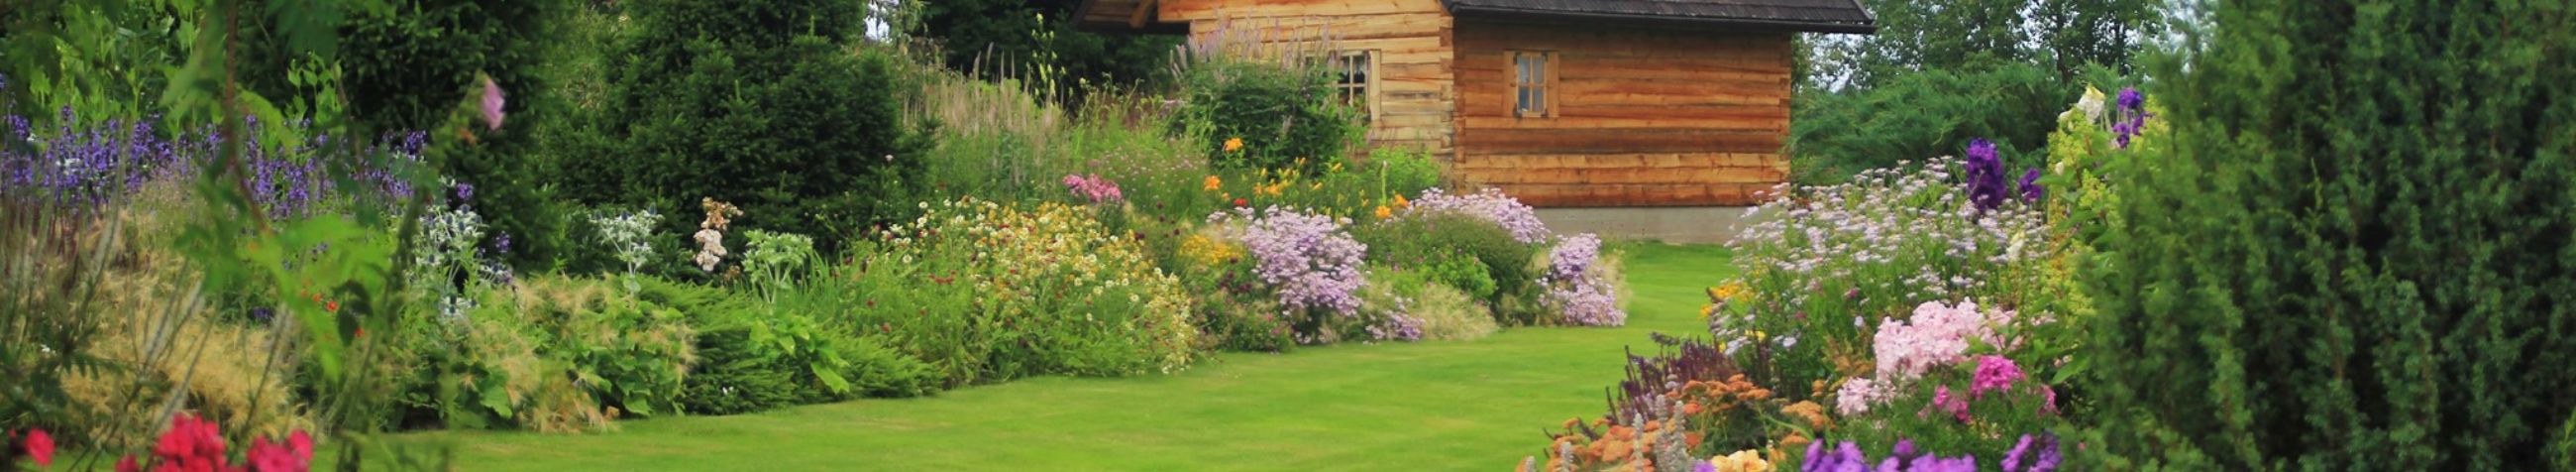 Palusalu Aiad on spetsialiseerunud professionaalsetele aiakujunduse ja -hoolduse teenustele, pakkudes klientidele individuaalseid ning looduslähedasi aialahendusi.